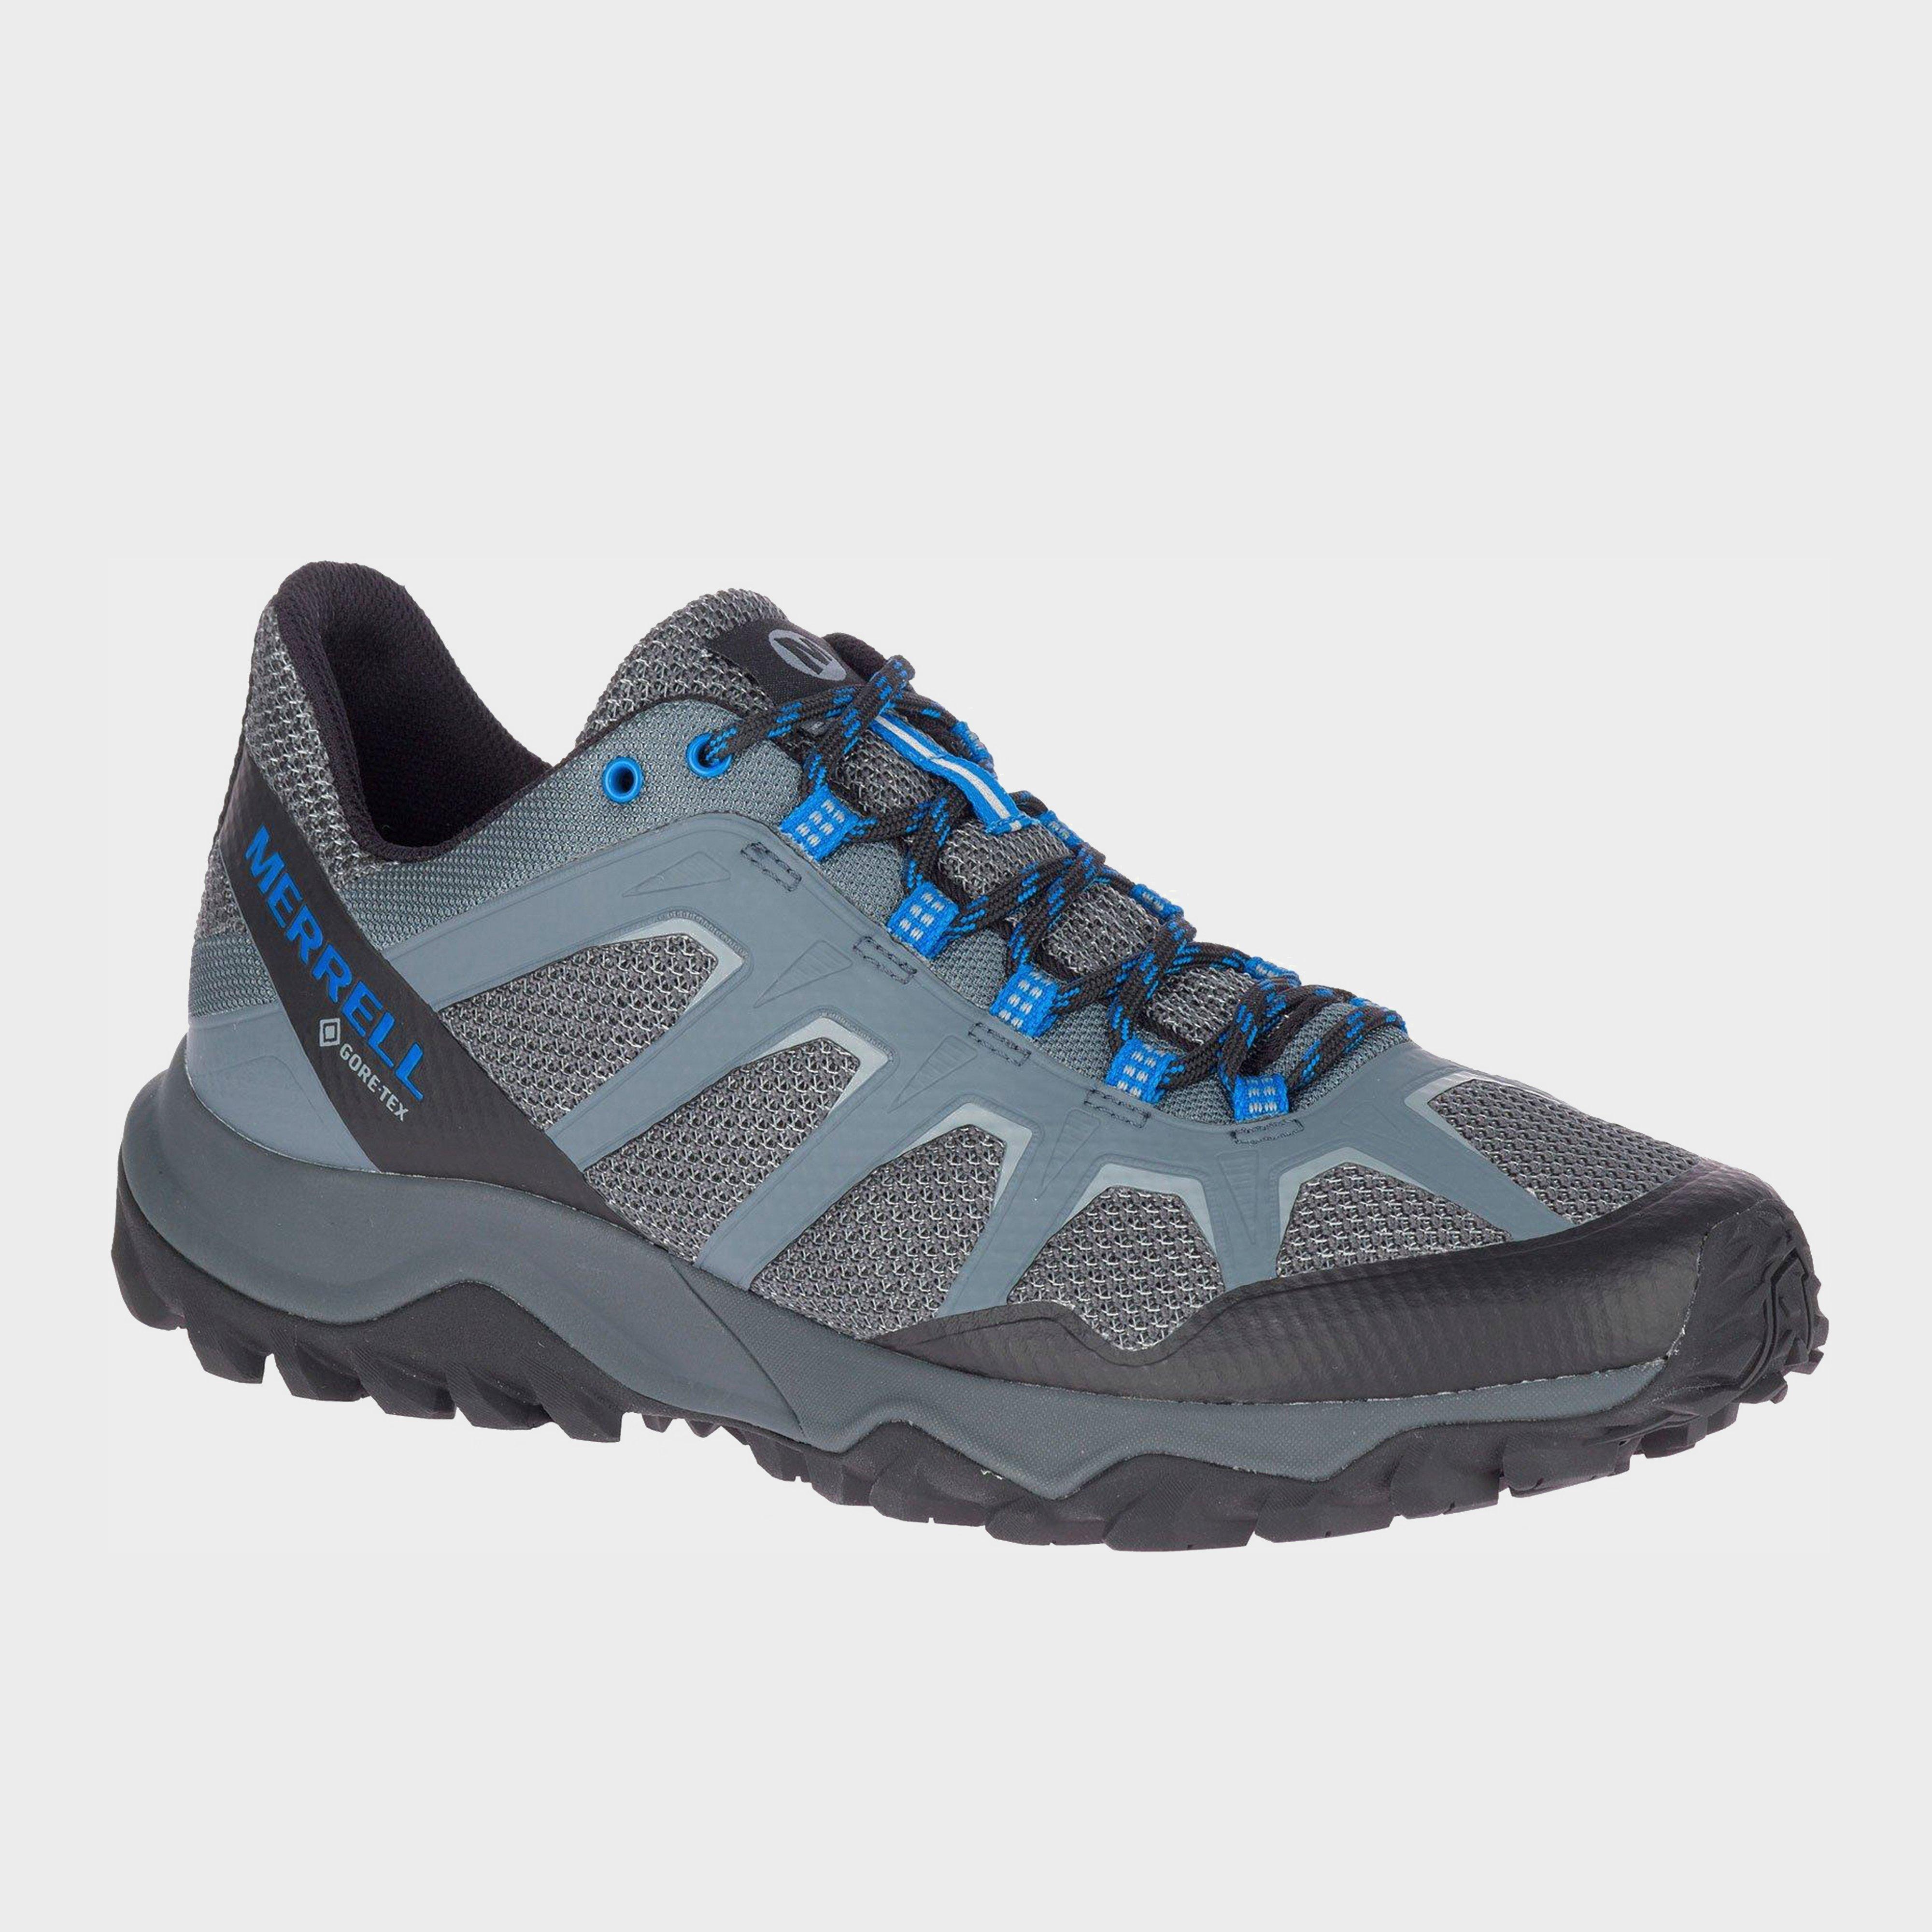 Merrell Men's Fiery GTX Trail Running Shoes Review